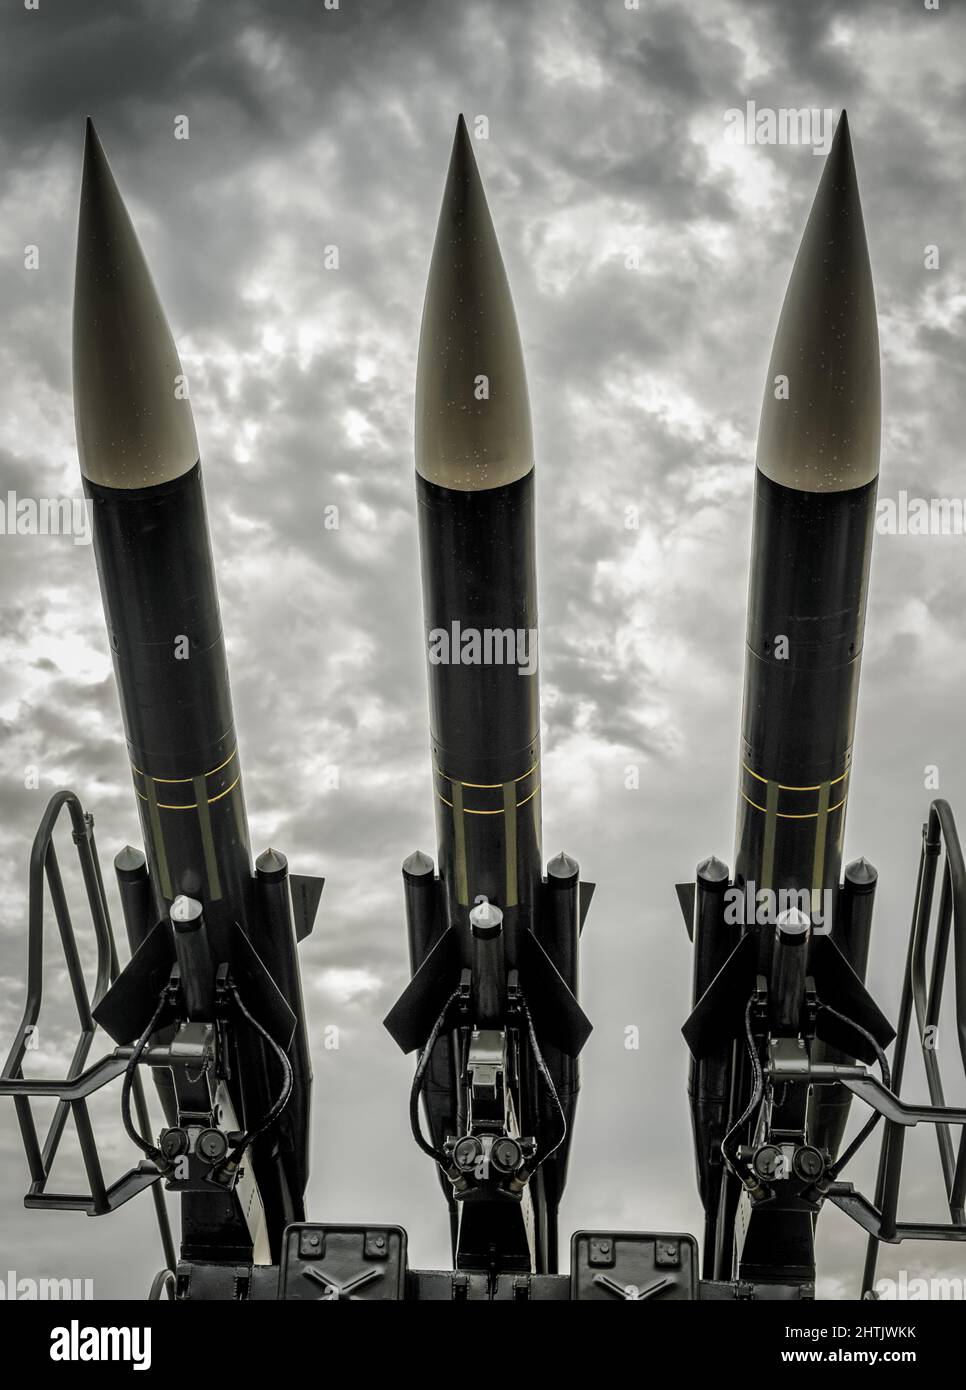 Cohetes balísticos. Misiles nucleares con Warhead apuntaron al cielo dramático. Concepto de guerra. Foto de stock